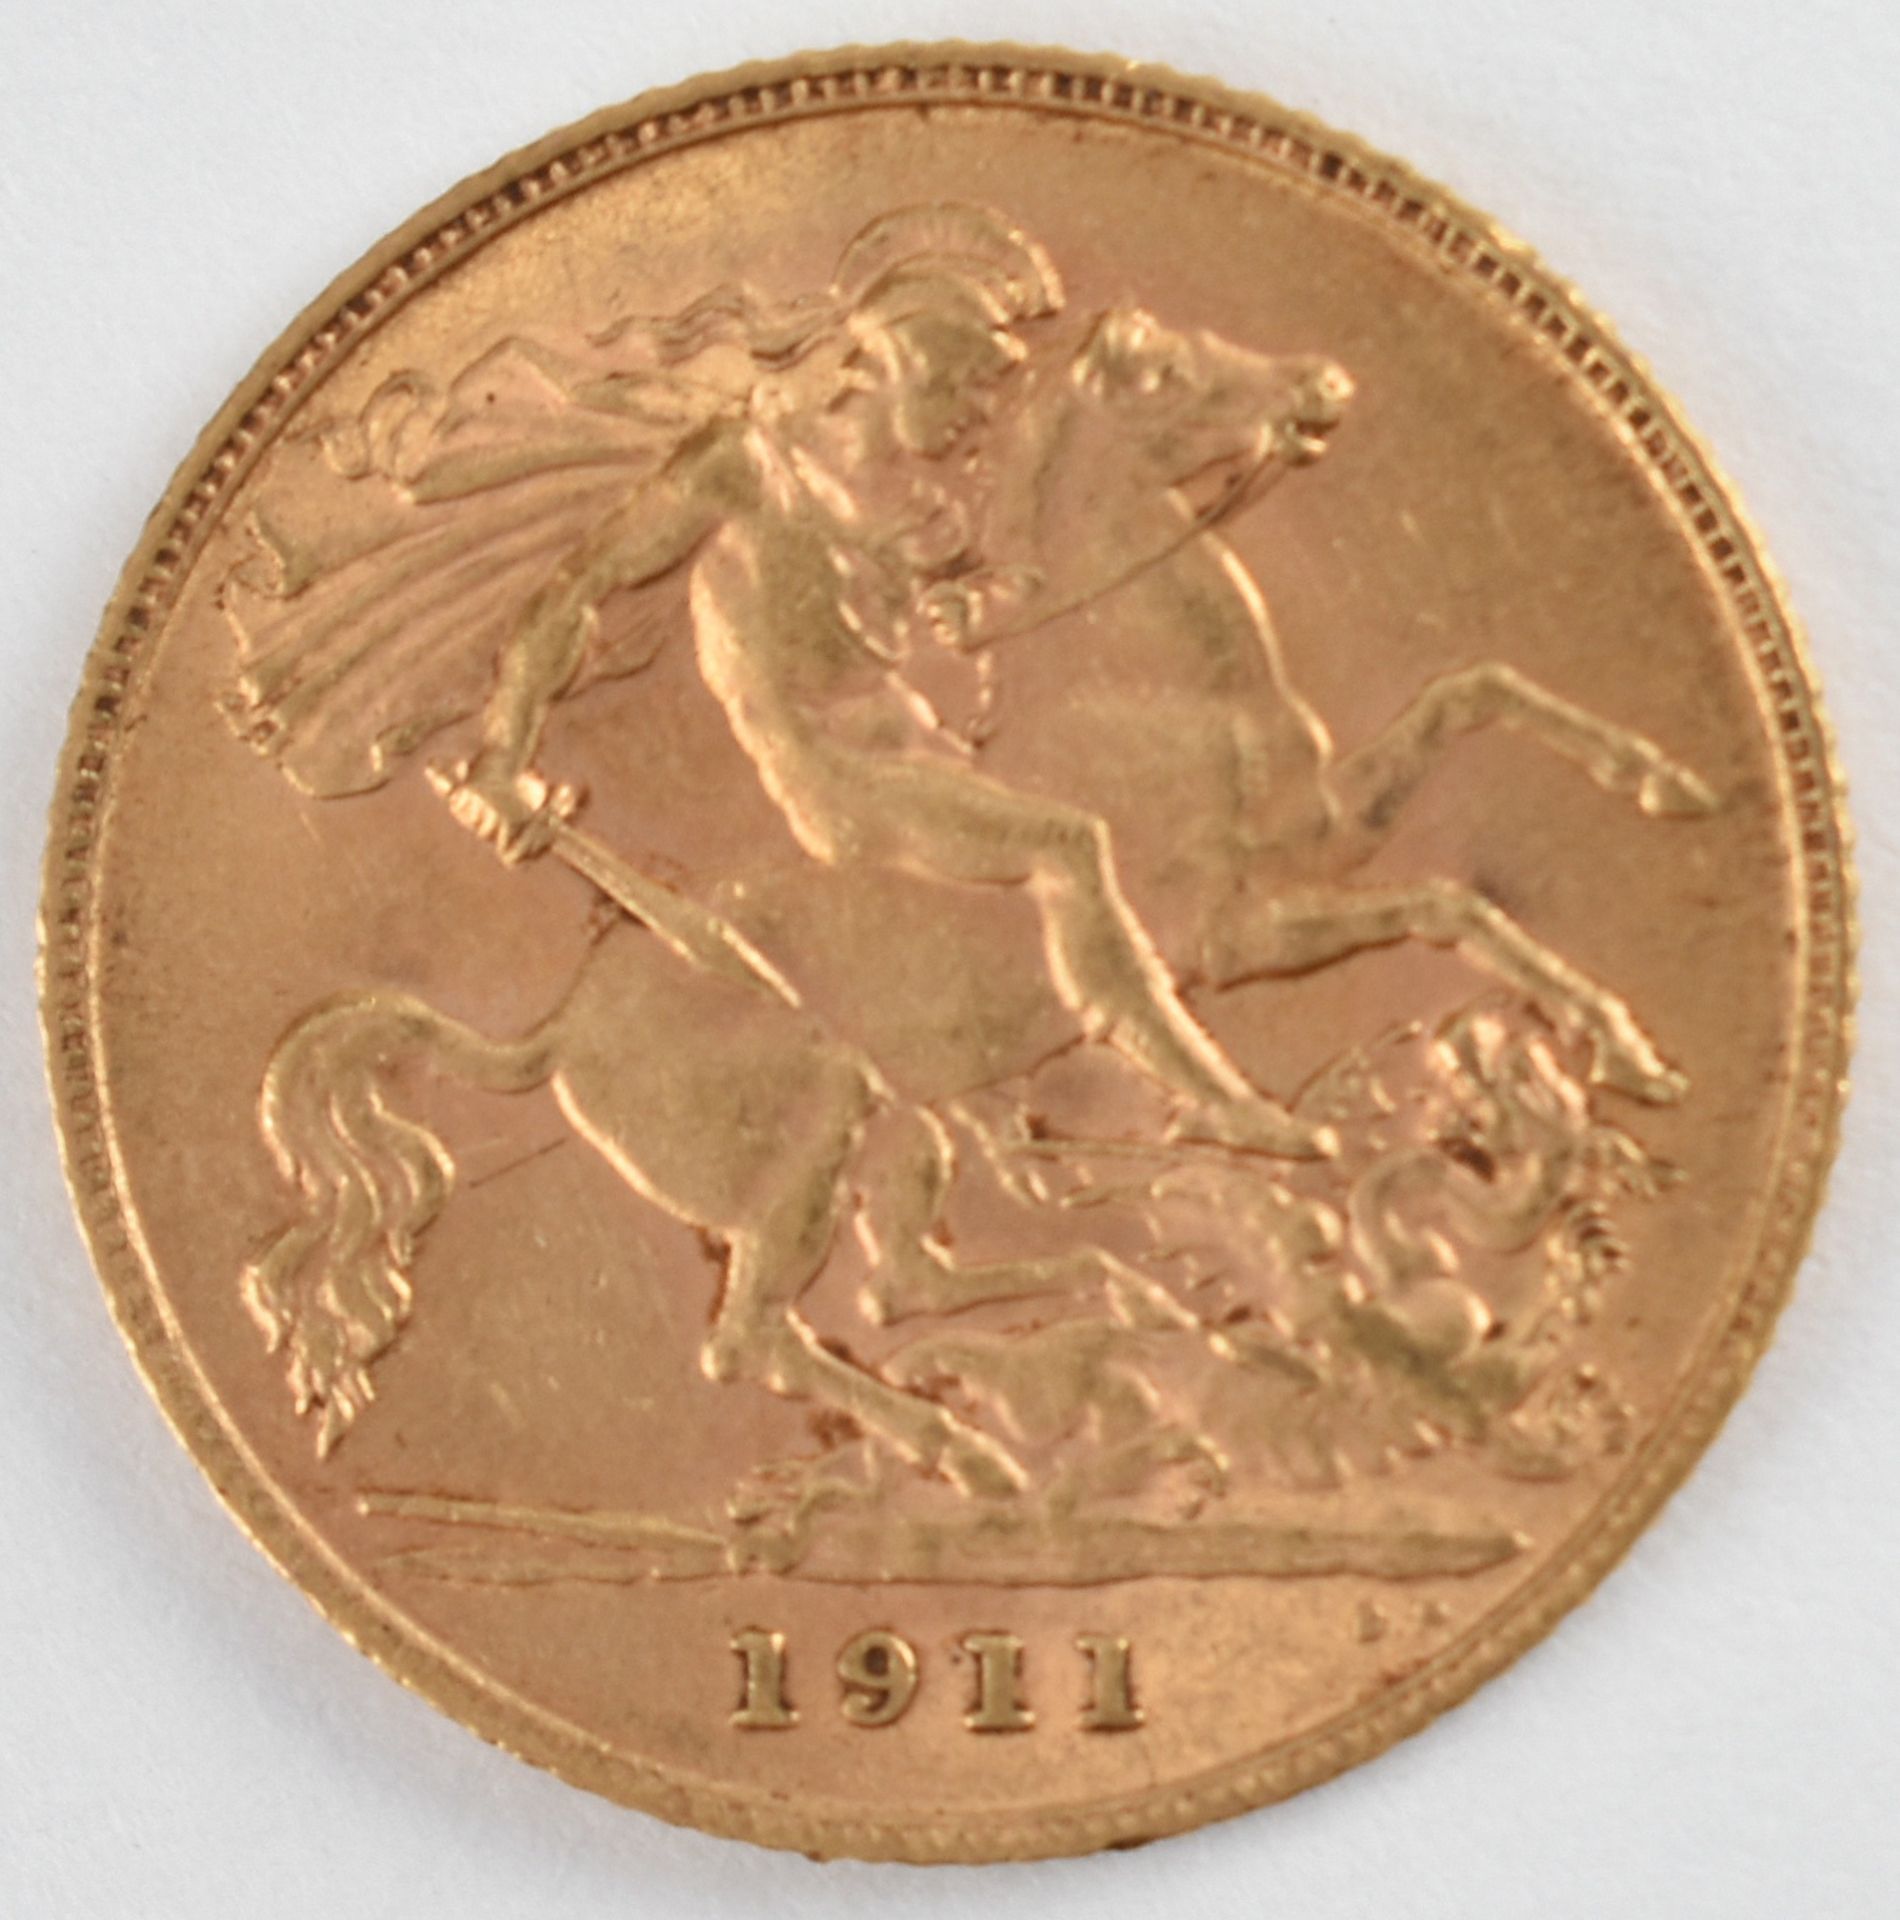 Goldmünze Großbritannien 1911 1/2 Sovereign - 1/2 Pfund in Gold, 3,994 g, 916/1000, D ca. 19,3 mm, - Bild 2 aus 3